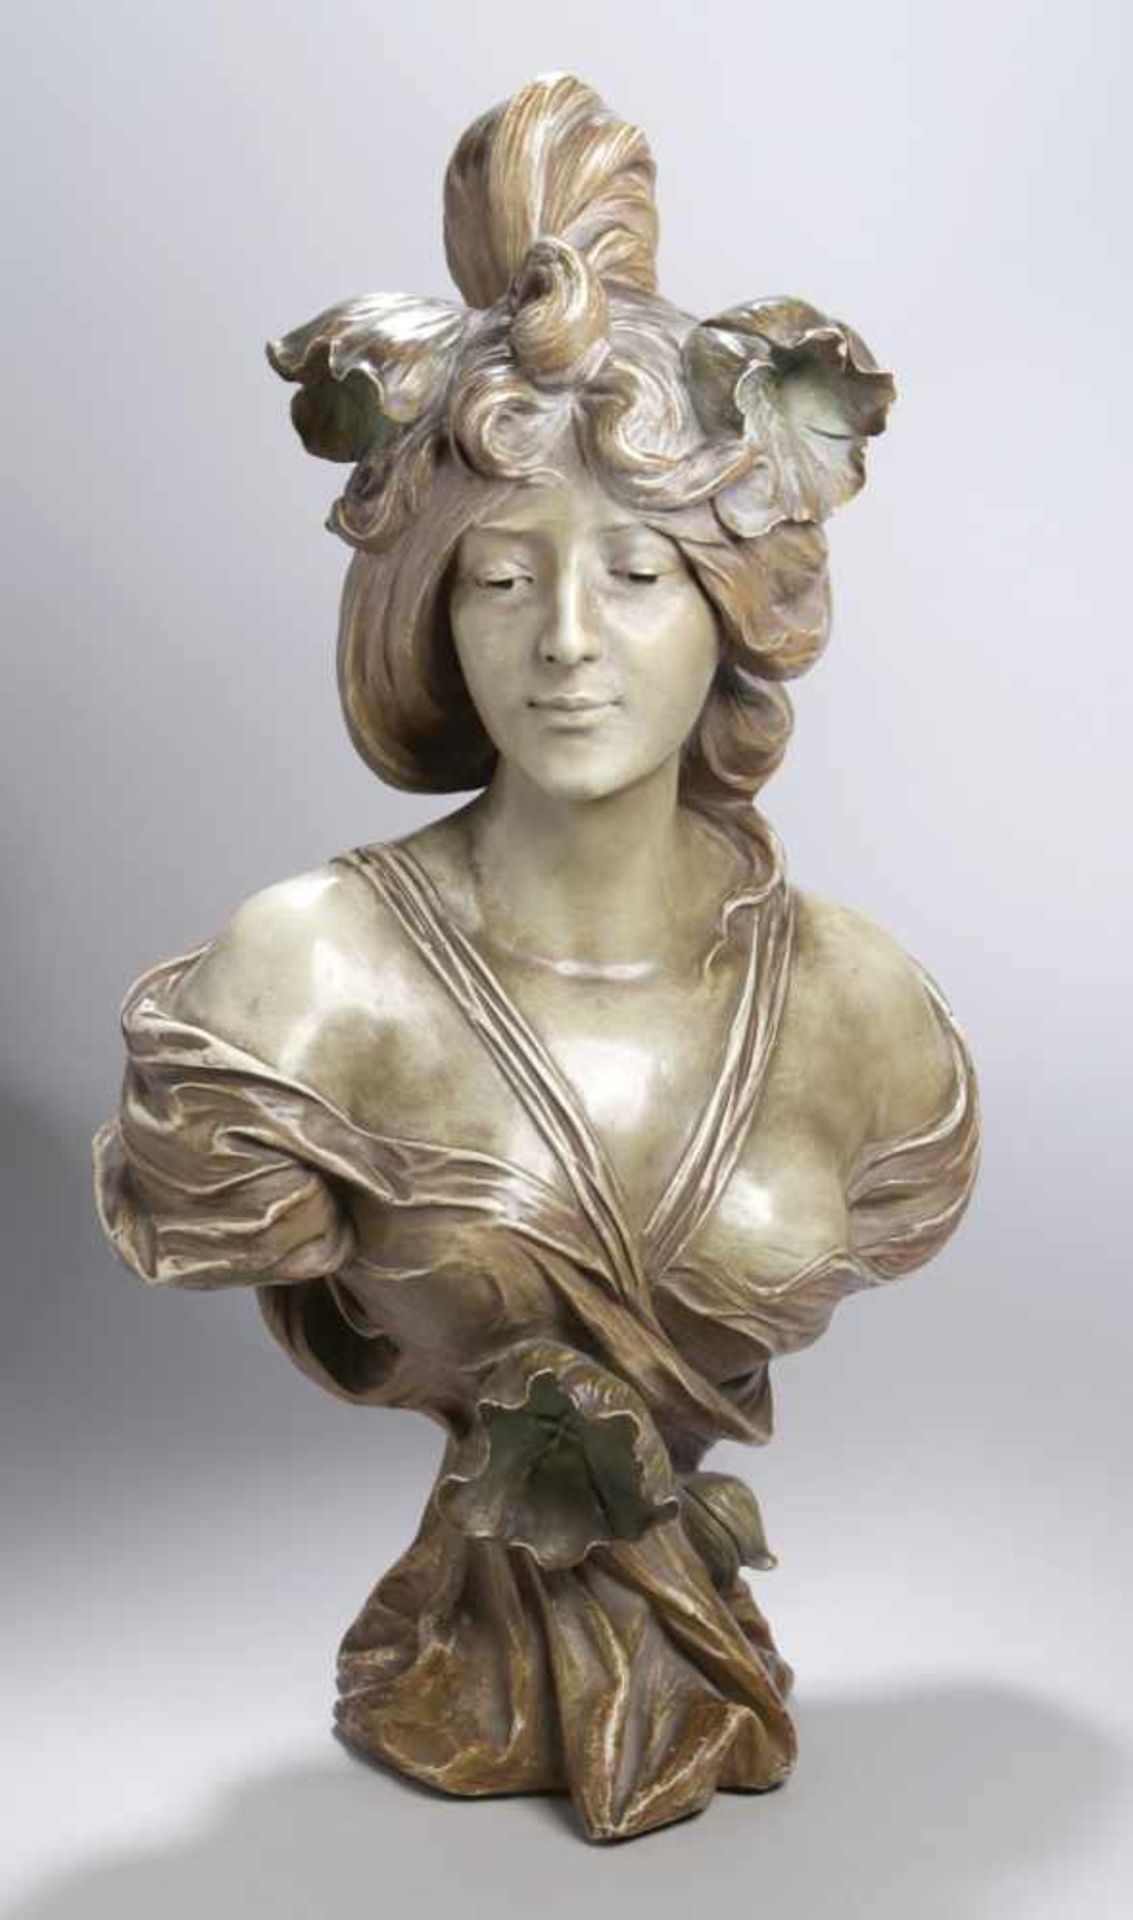 Keramik-Büste, "Jugendstil Schönheit", Uriela, um 1900, Mod.nr.: 2651, vollplastischeDarstellung